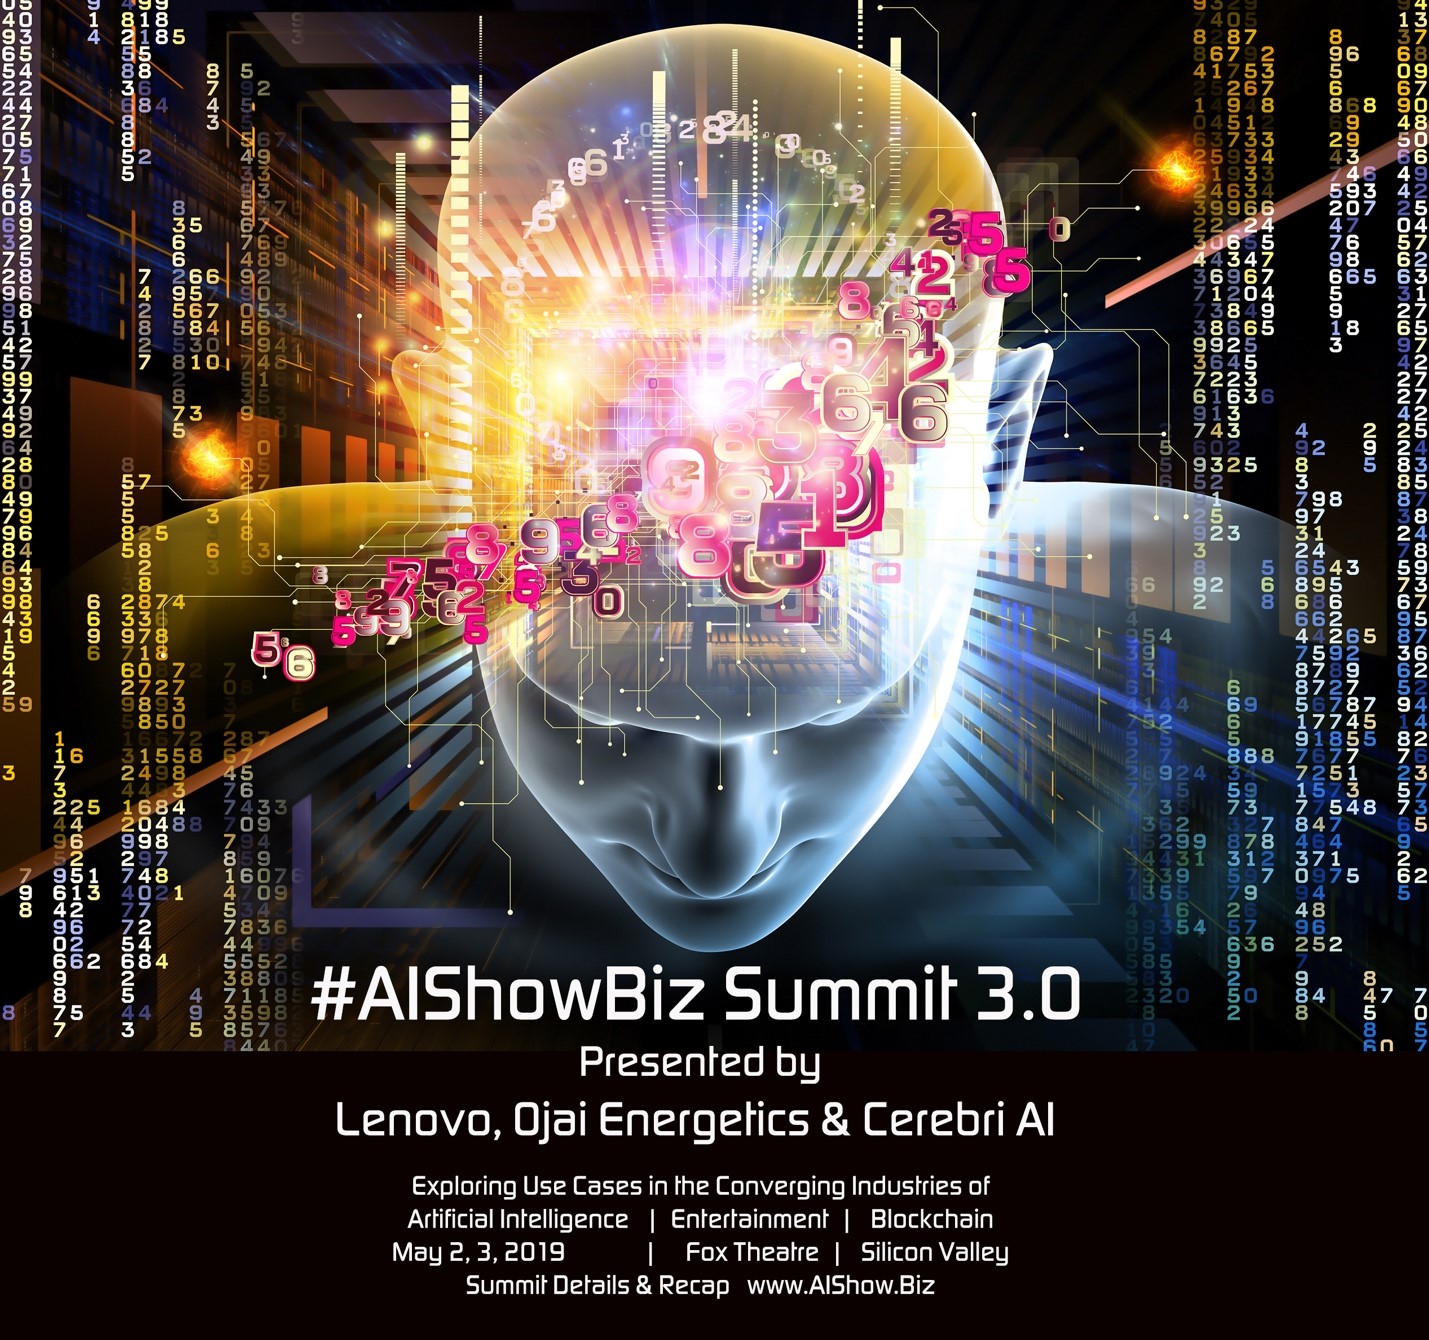 BLOCKCHAIN TOOK CENTER STAGE AT THIS YEAR’S #AISHOWBIZ SUMMIT 3.0!